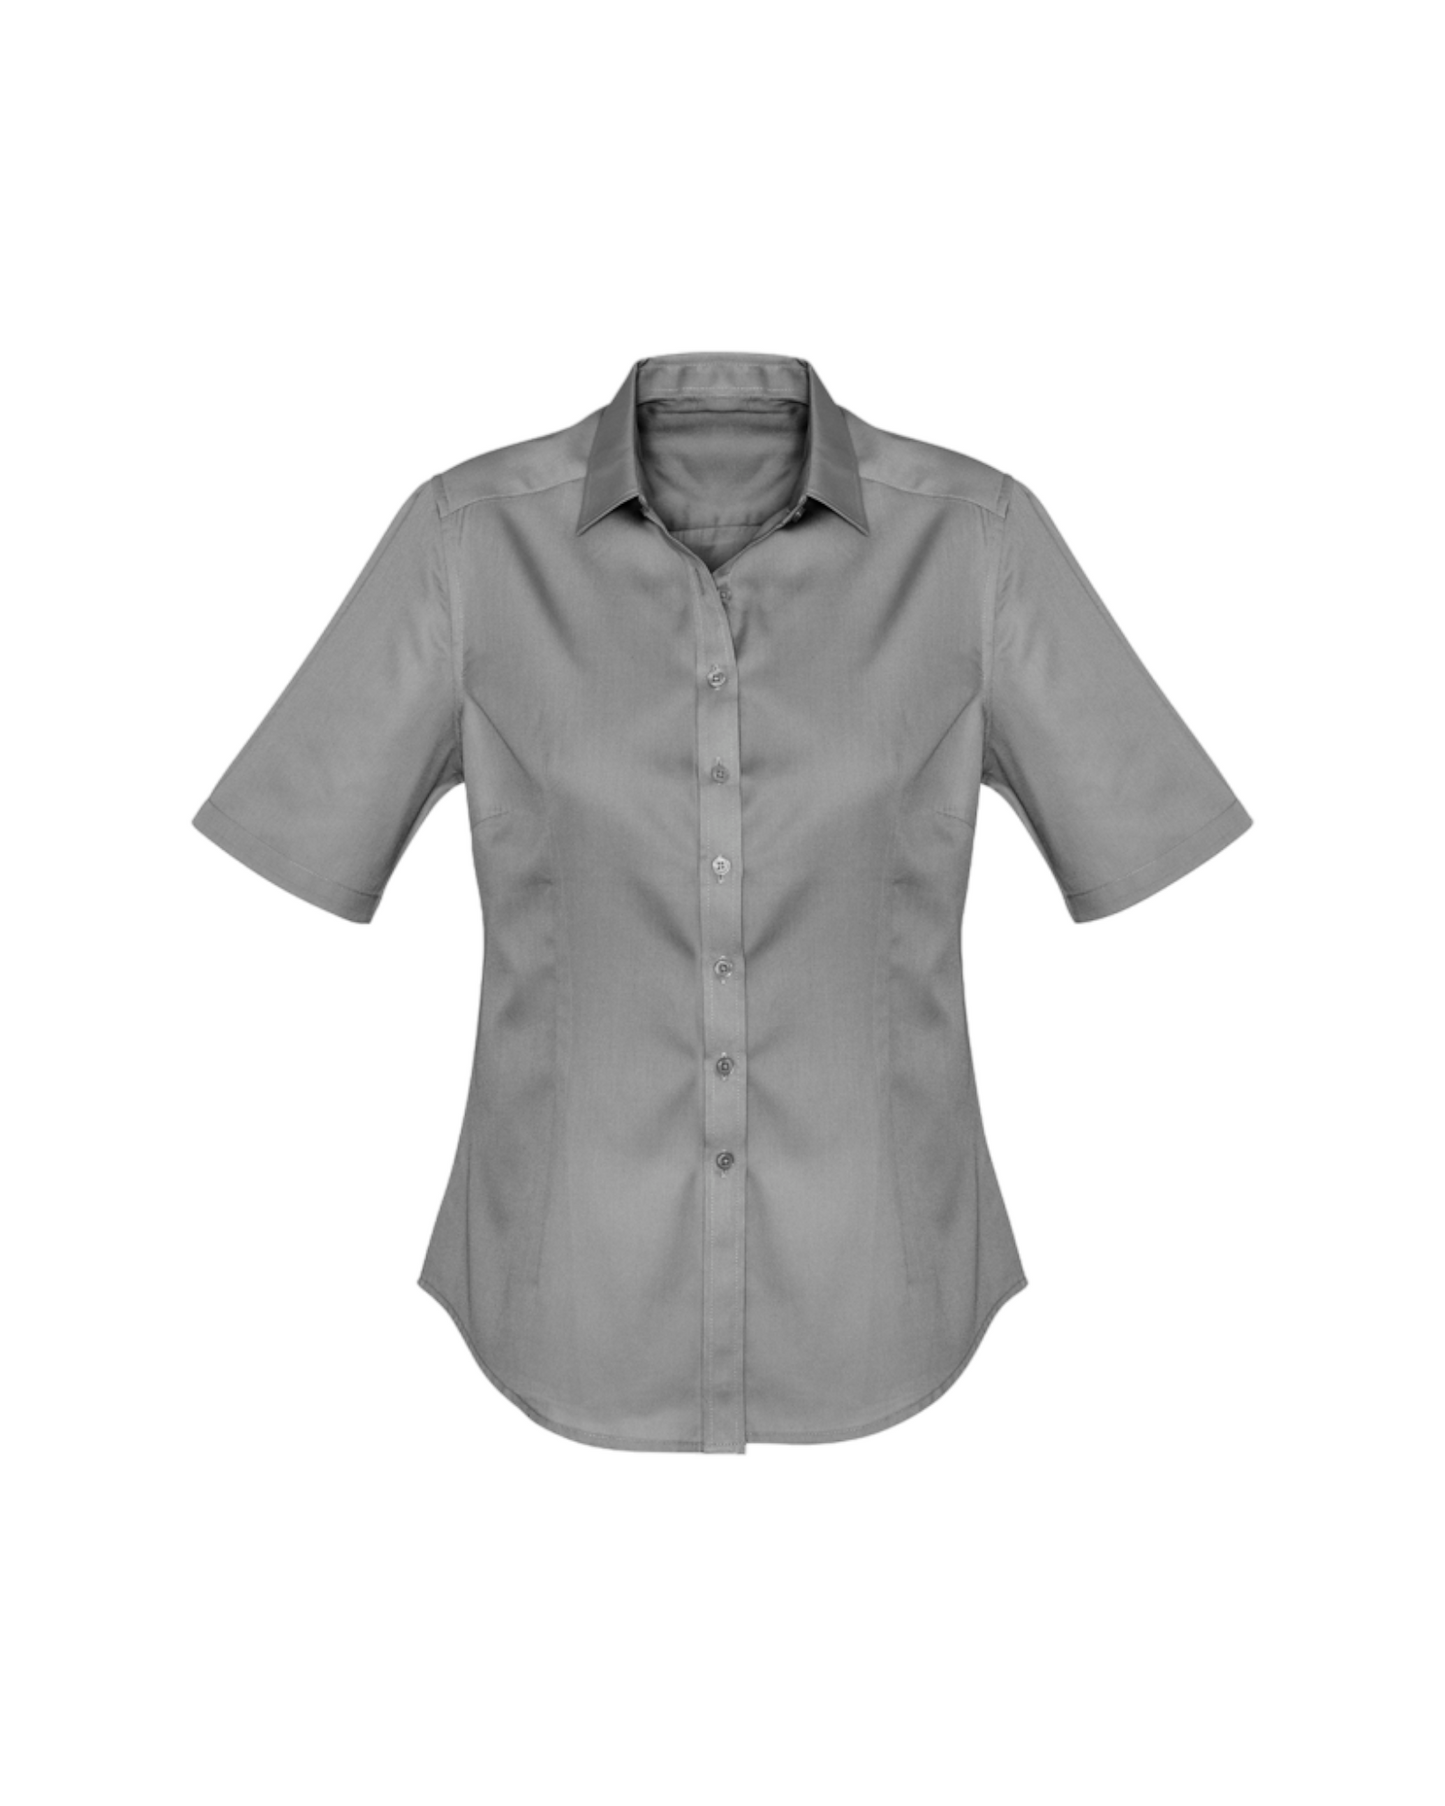 Ladies Dalton Short Sleeve Shirt Fashion Biz #S522LS